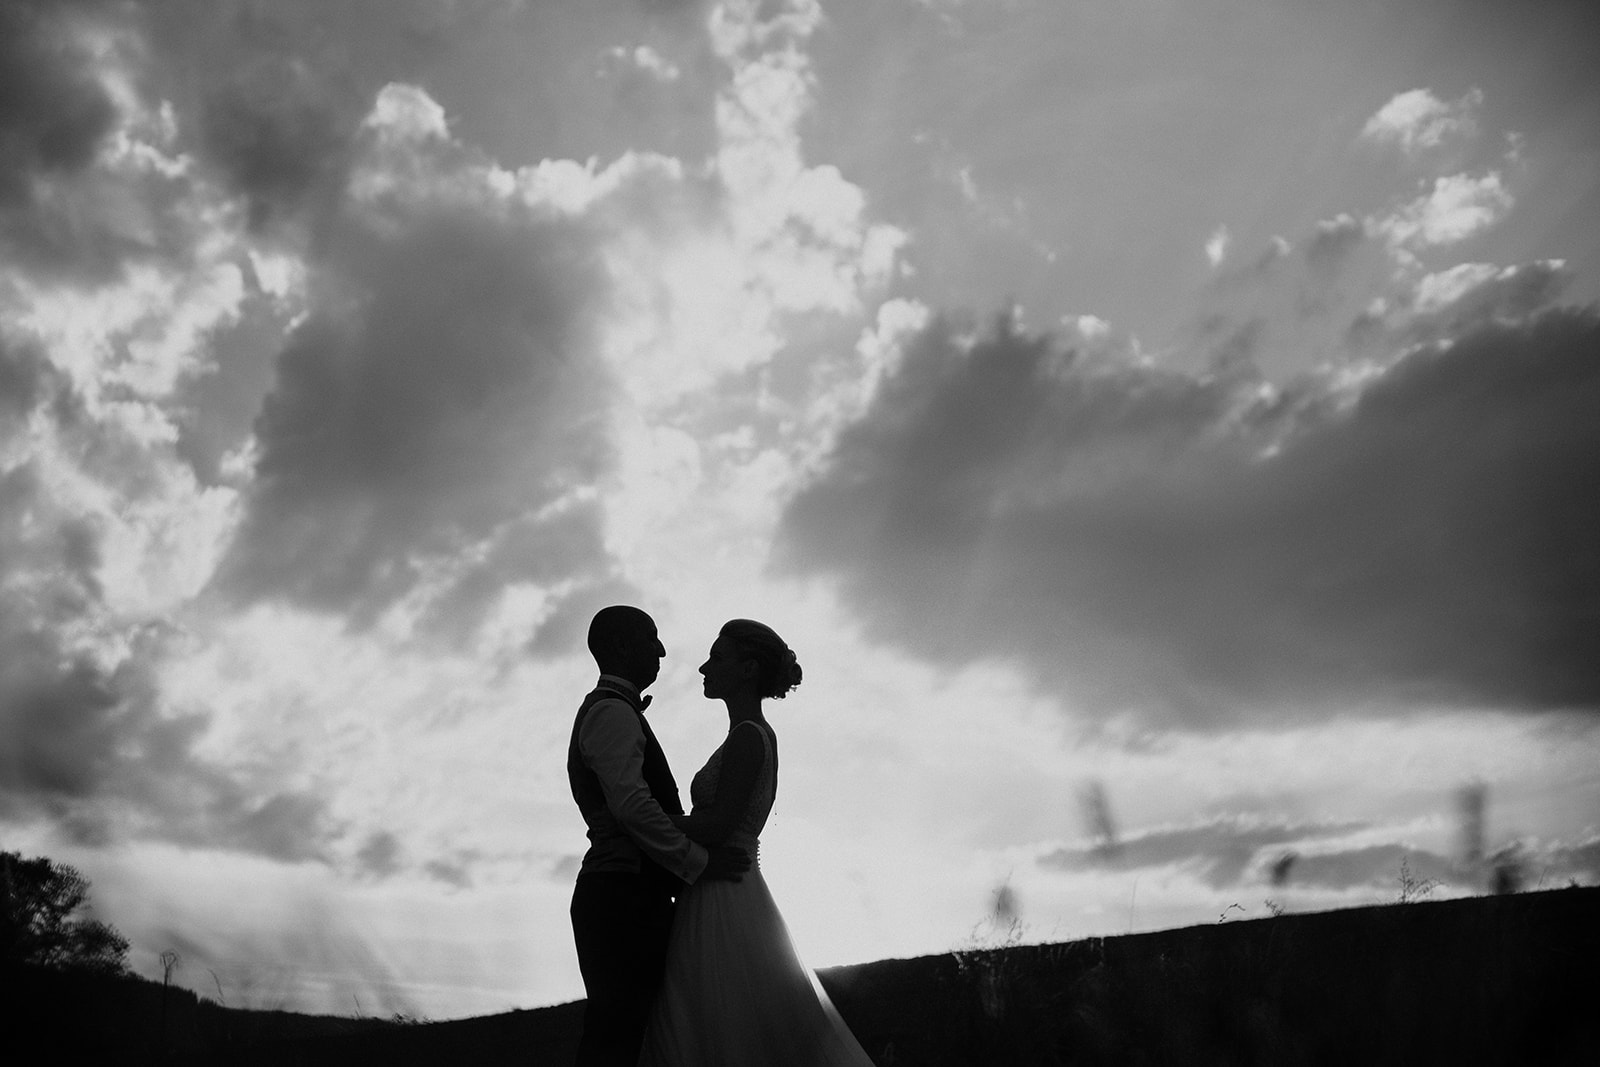 Duo photographe de mariage Castille ALMA et David POMMIER pour ne rien rater de chaque instant de joie de votre mariage